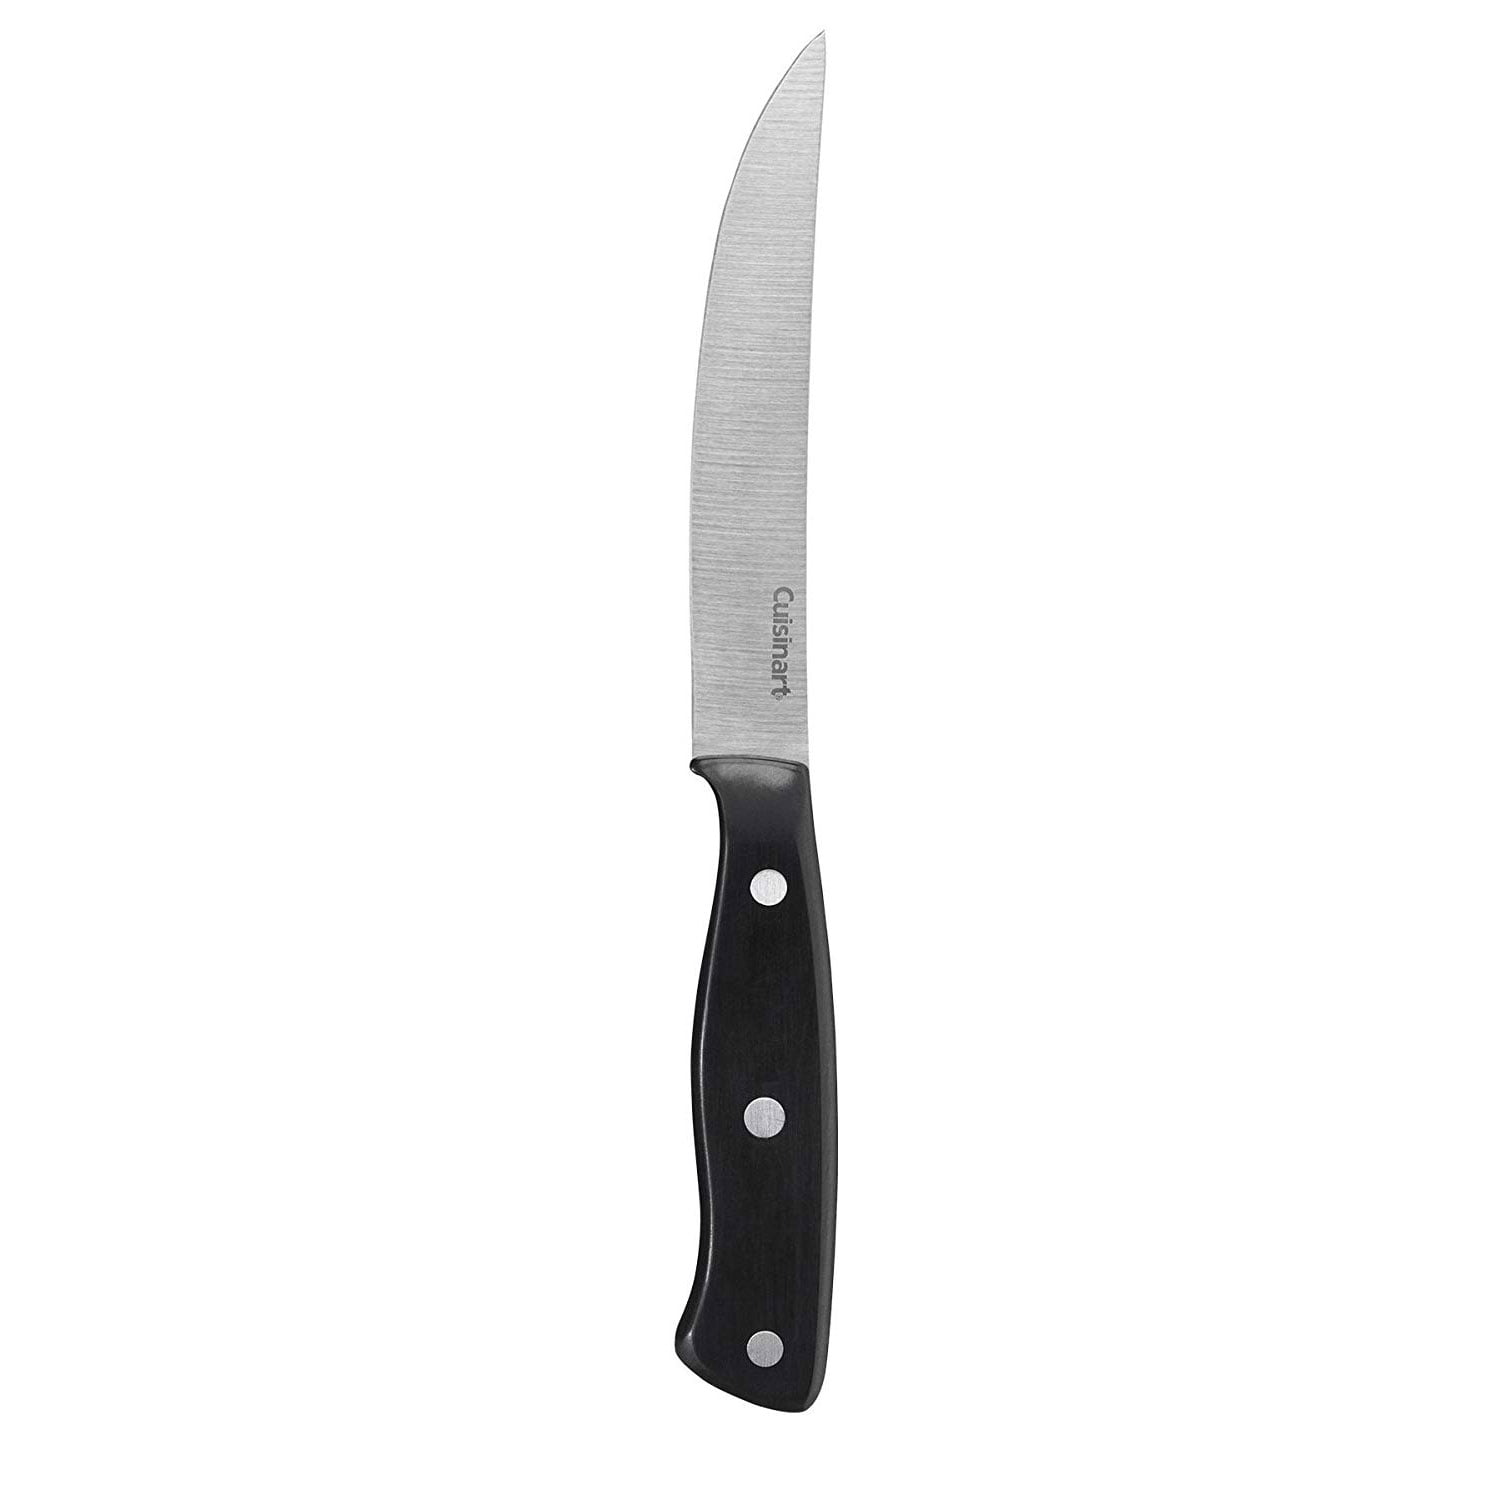  CHILLKET Steak Knives, Steak Knife Set of 6, Plain